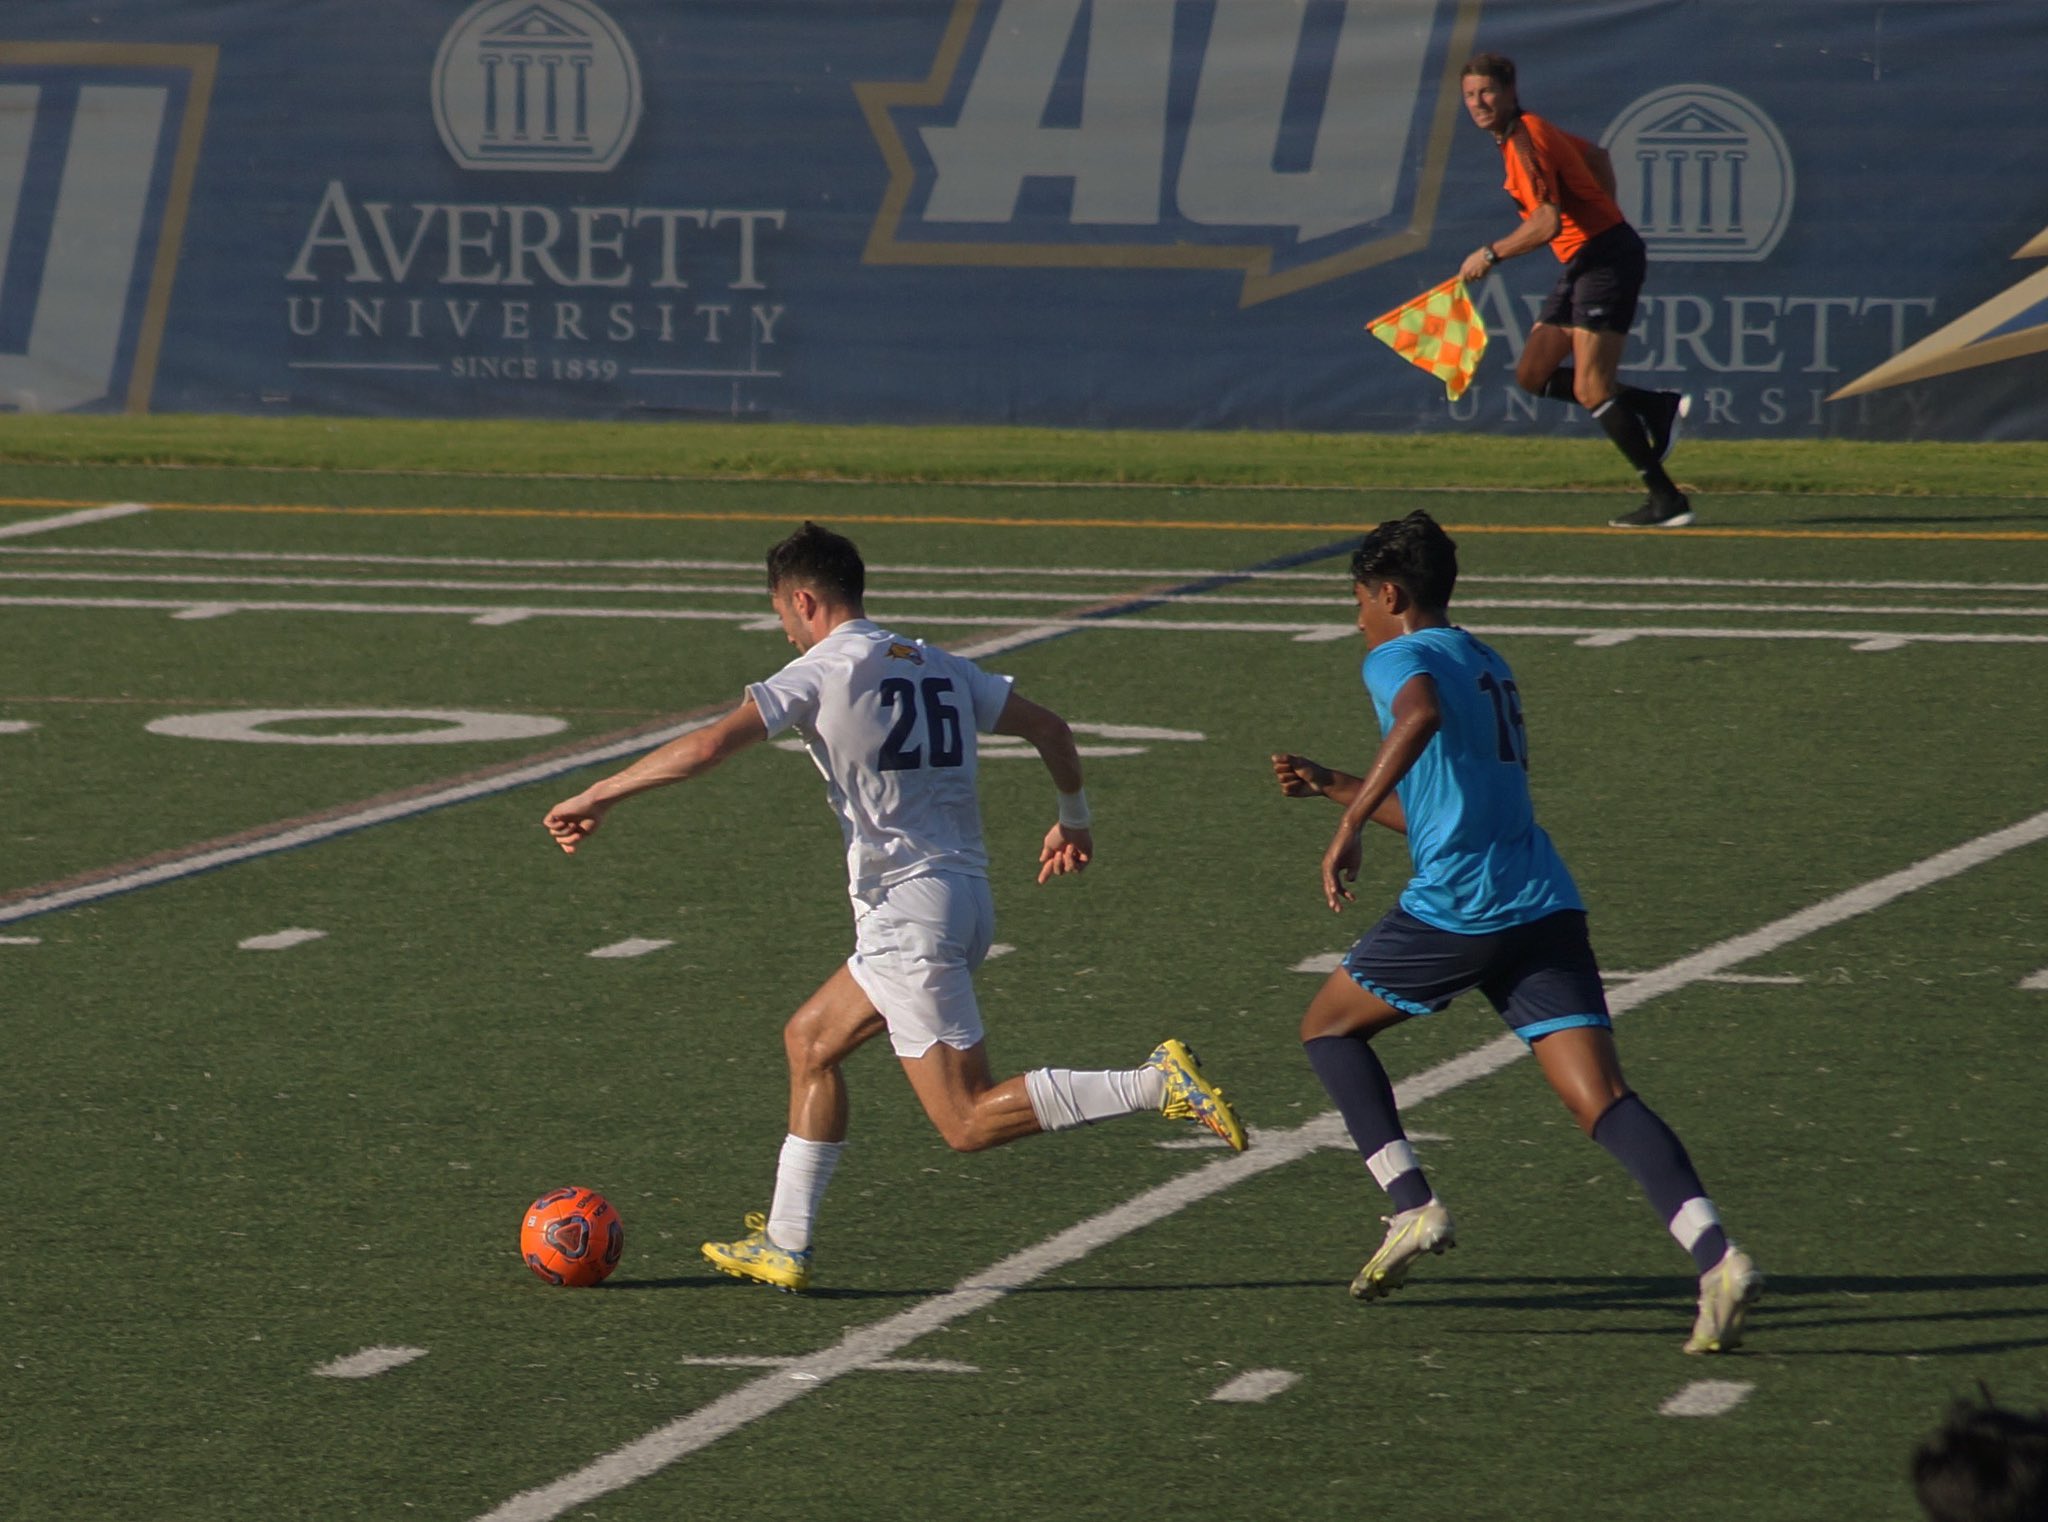 Lluc Pou - 2021 - Men's Soccer - Averett University Athletics